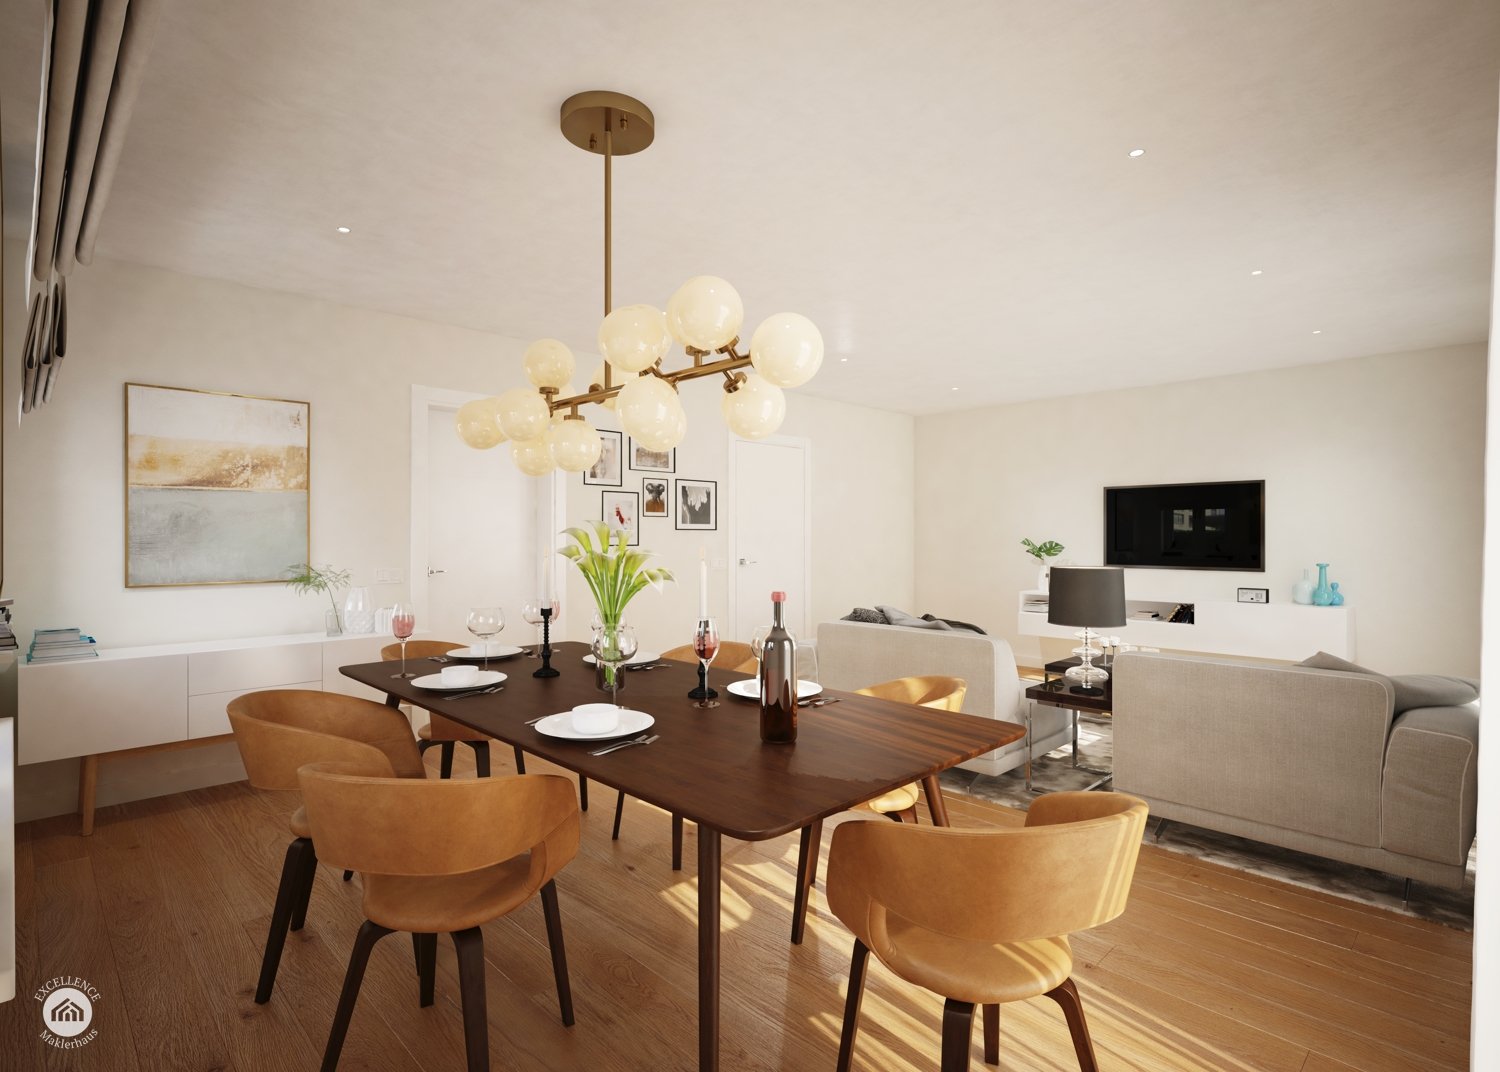 Immobilienangebot - Leipheim - Alle - All inclusiv - 2020 noch einziehen DHH rechts 131 m² , Garage, 2 Stellplätze, Garten und Terrasse